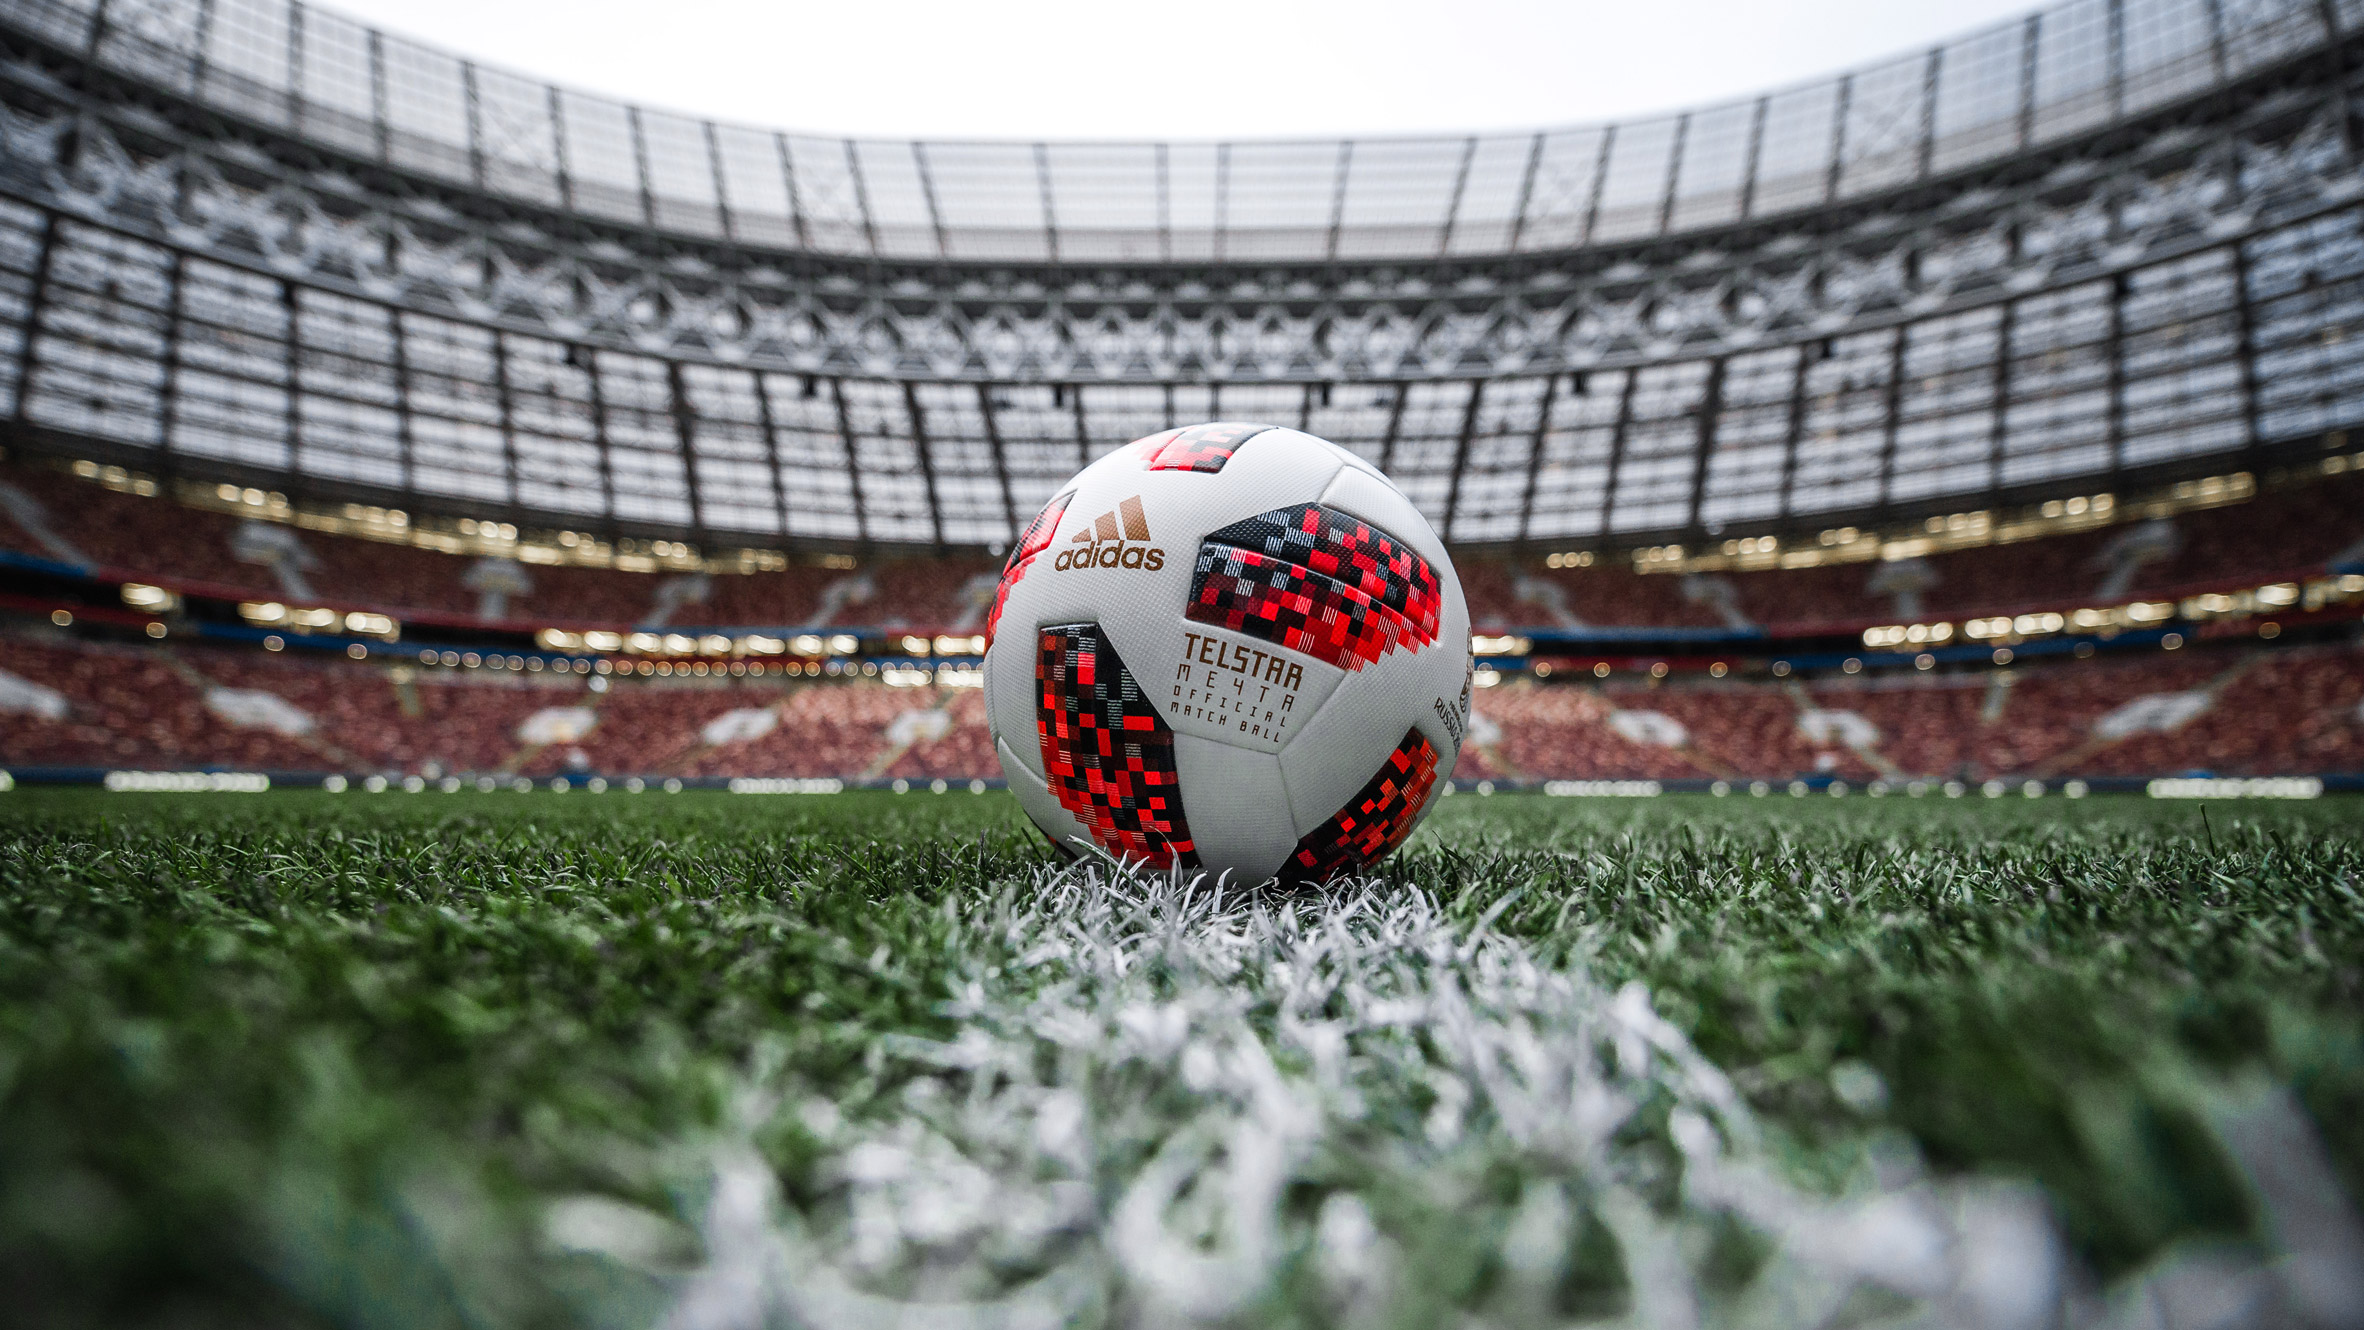 adidas world cup 2018 official match ball